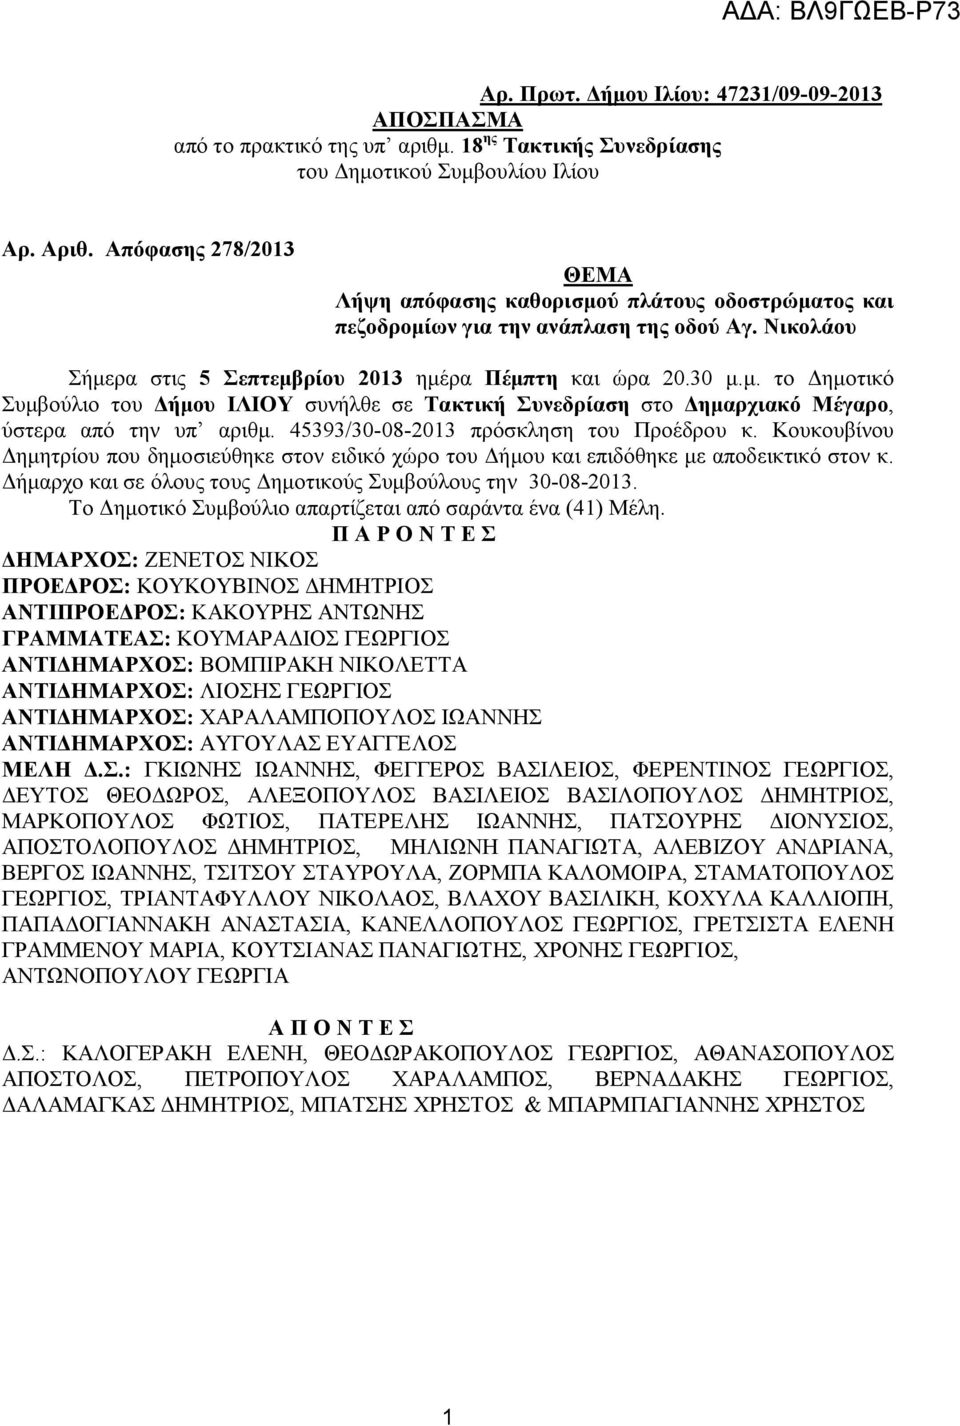 45393/30-08-2013 πρόσκληση του Προέδρου κ. Κουκουβίνου Δημητρίου που δημοσιεύθηκε στον ειδικό χώρο του Δήμου και επιδόθηκε με αποδεικτικό στον κ.